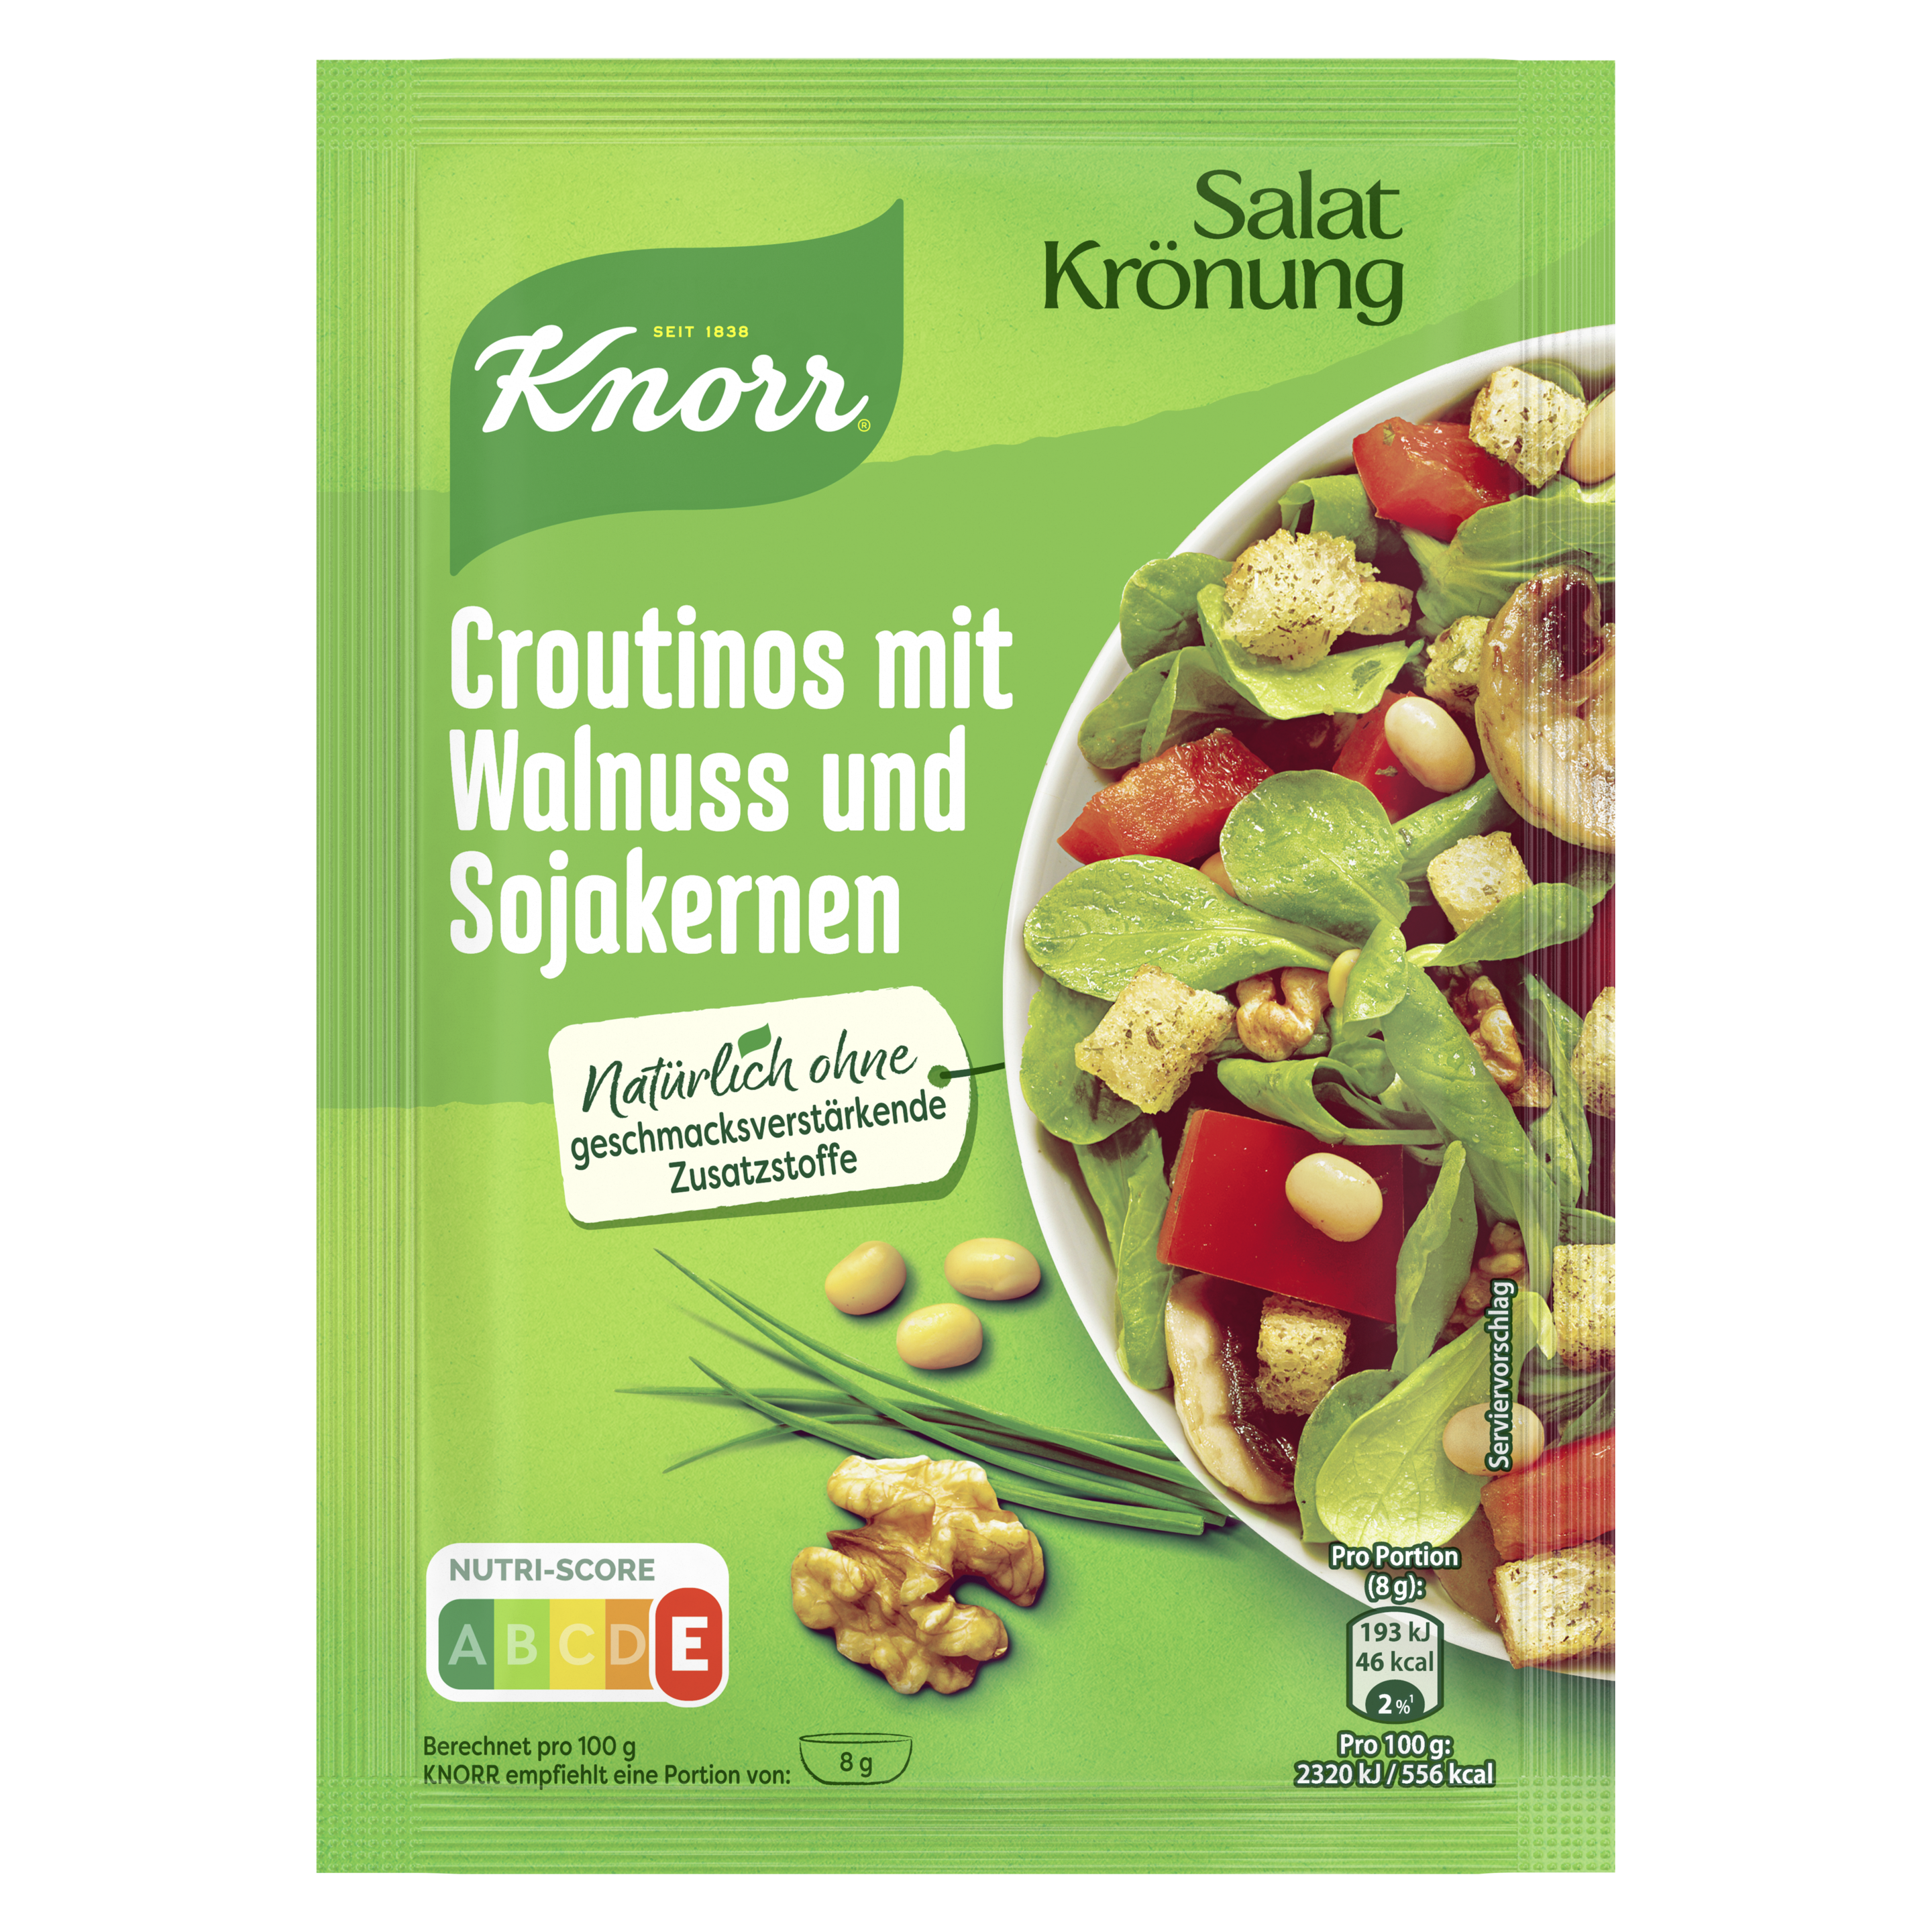 Knorr Salatkrönung Croutinos mit Walnuss und Sojakernen Croutinos 3 Portionen